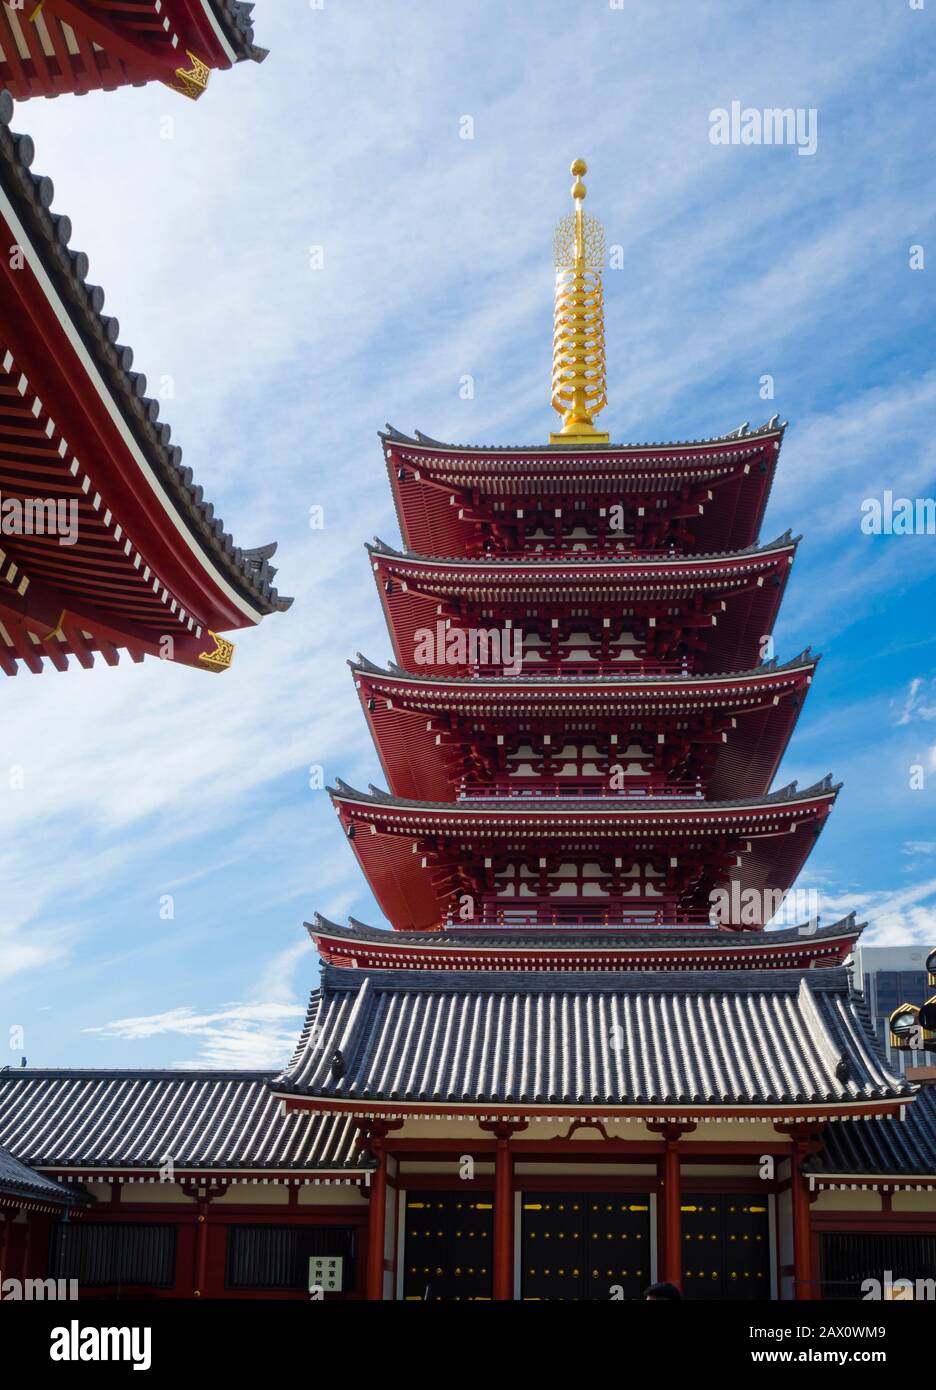 Tokyo, Giappone - 10 ottobre 2018: Pagoda a cinque piani al Tempio Sensoji (anche: Tempio Asakusa Kannon) nel quartiere dei templi di Asakusa Shinto di Tokyo. Foto Stock